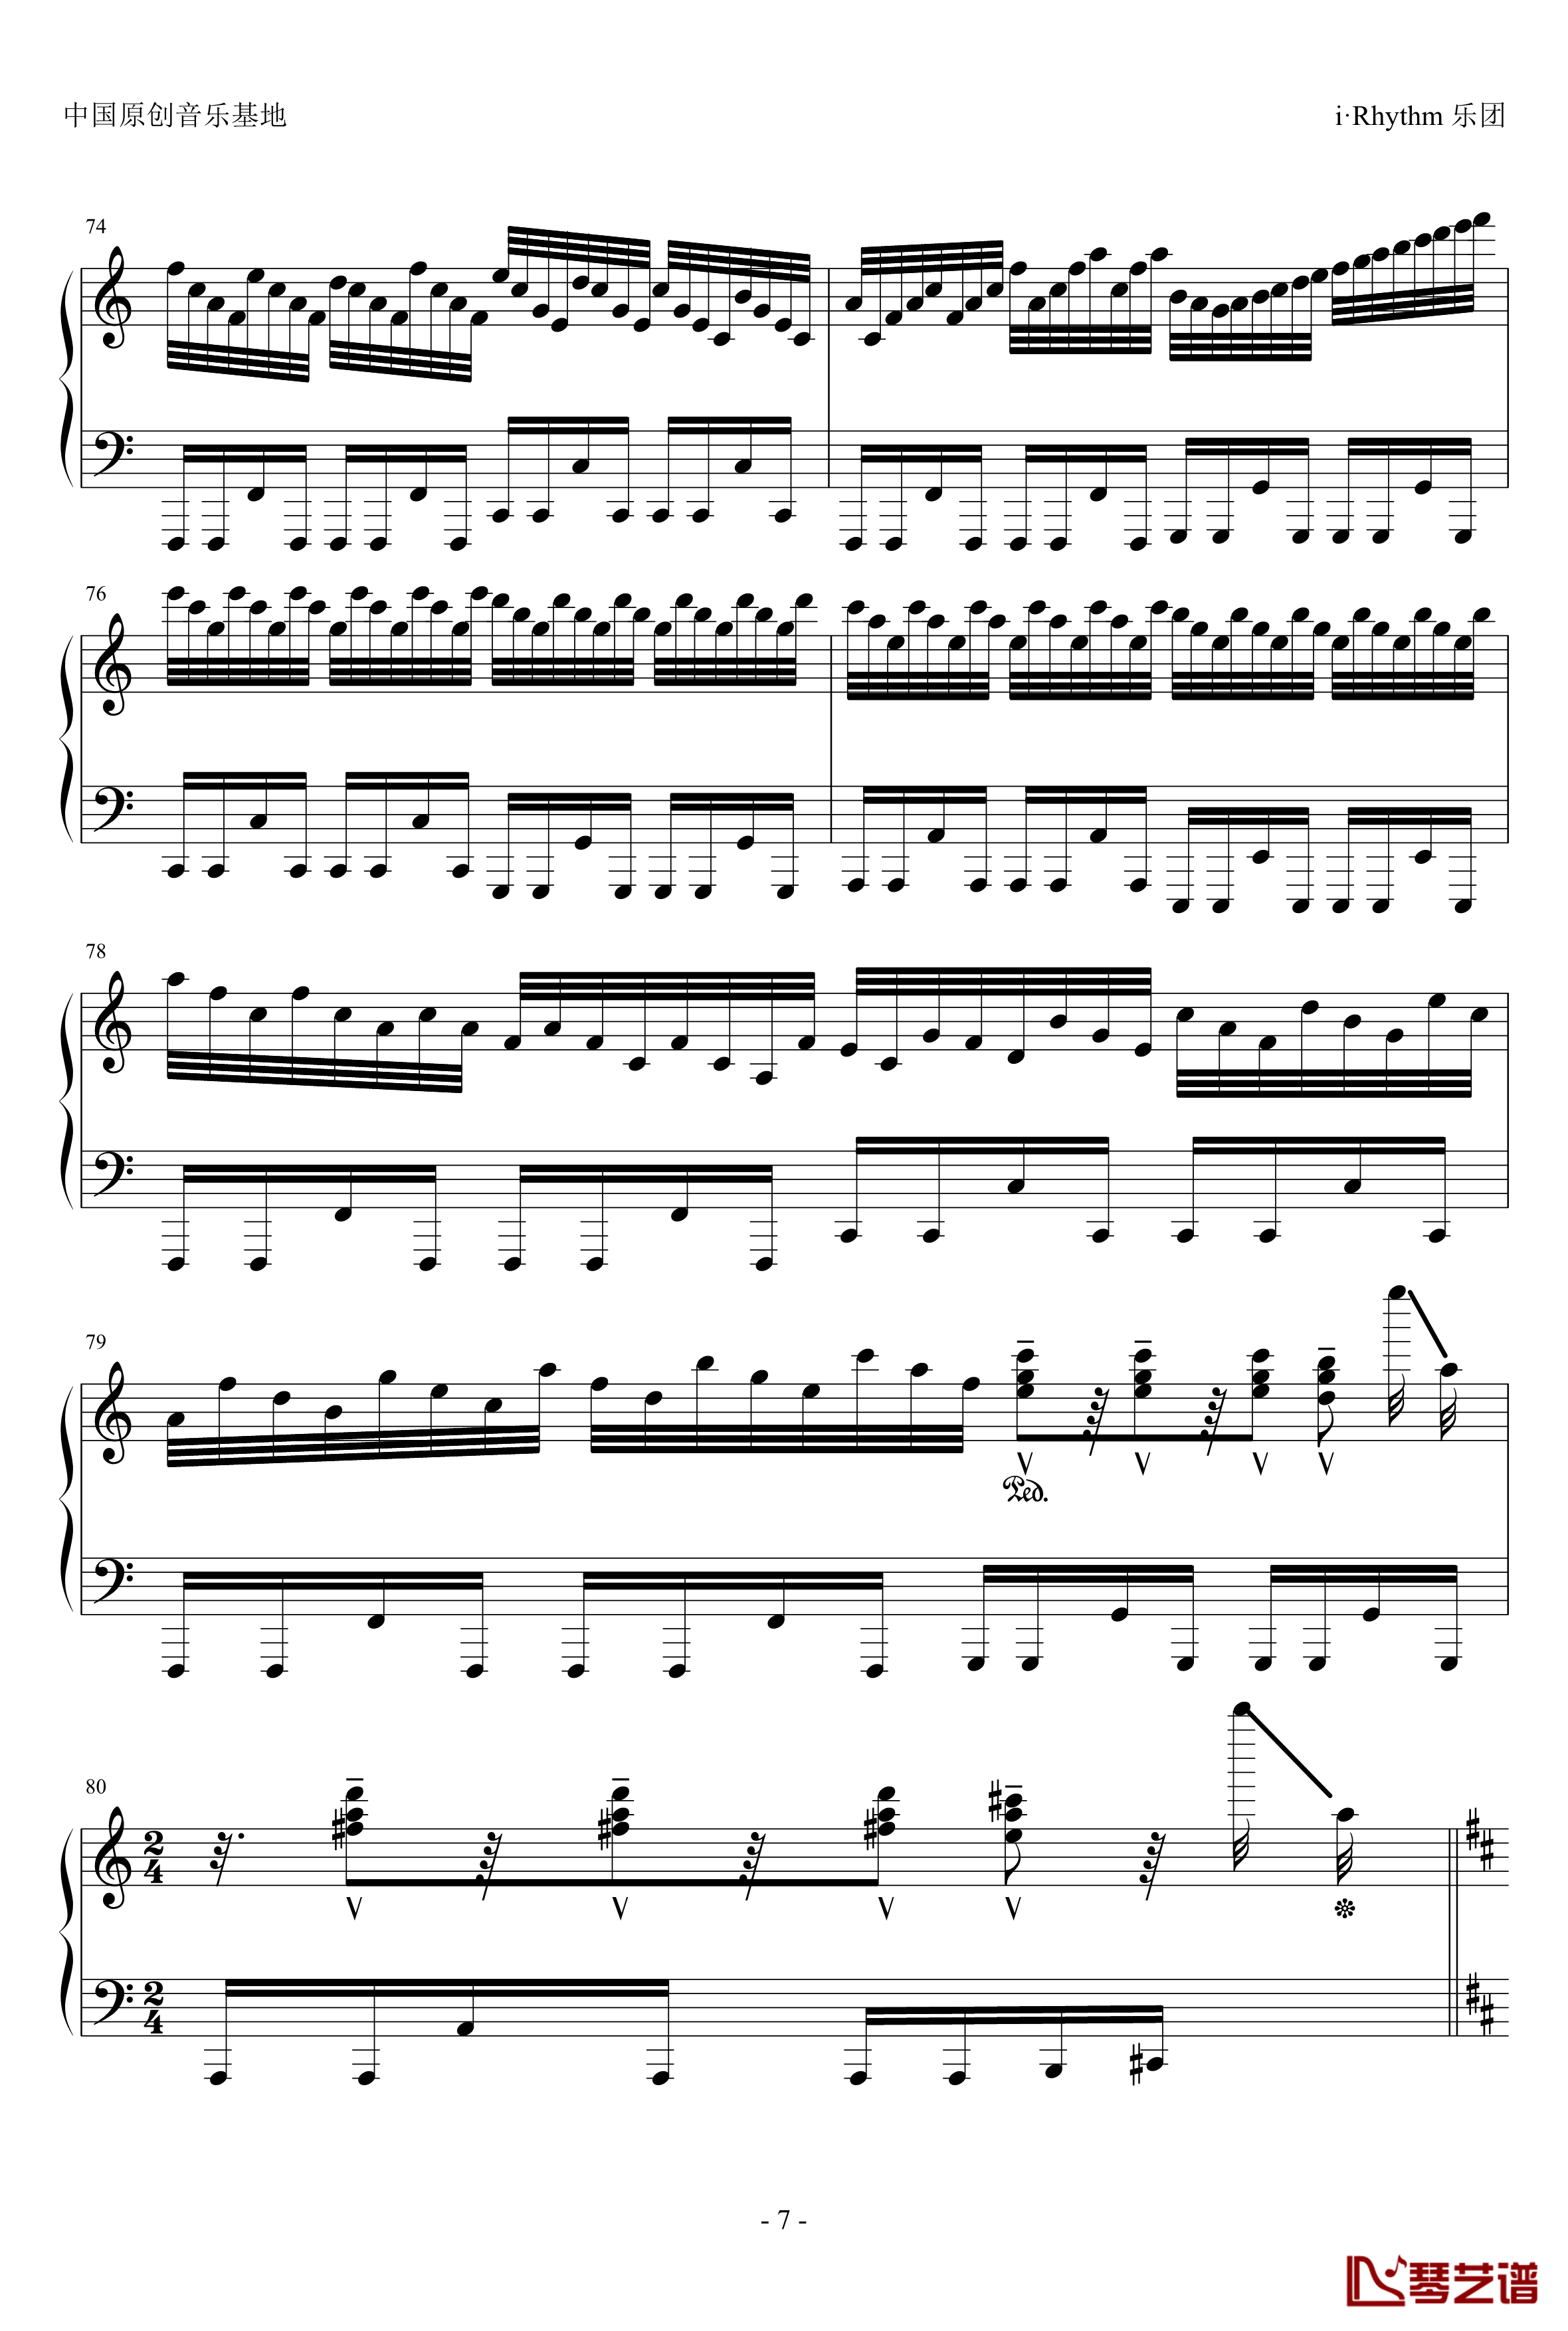 卡农钢琴谱-疯狂版-帕赫贝尔-Pachelbel7